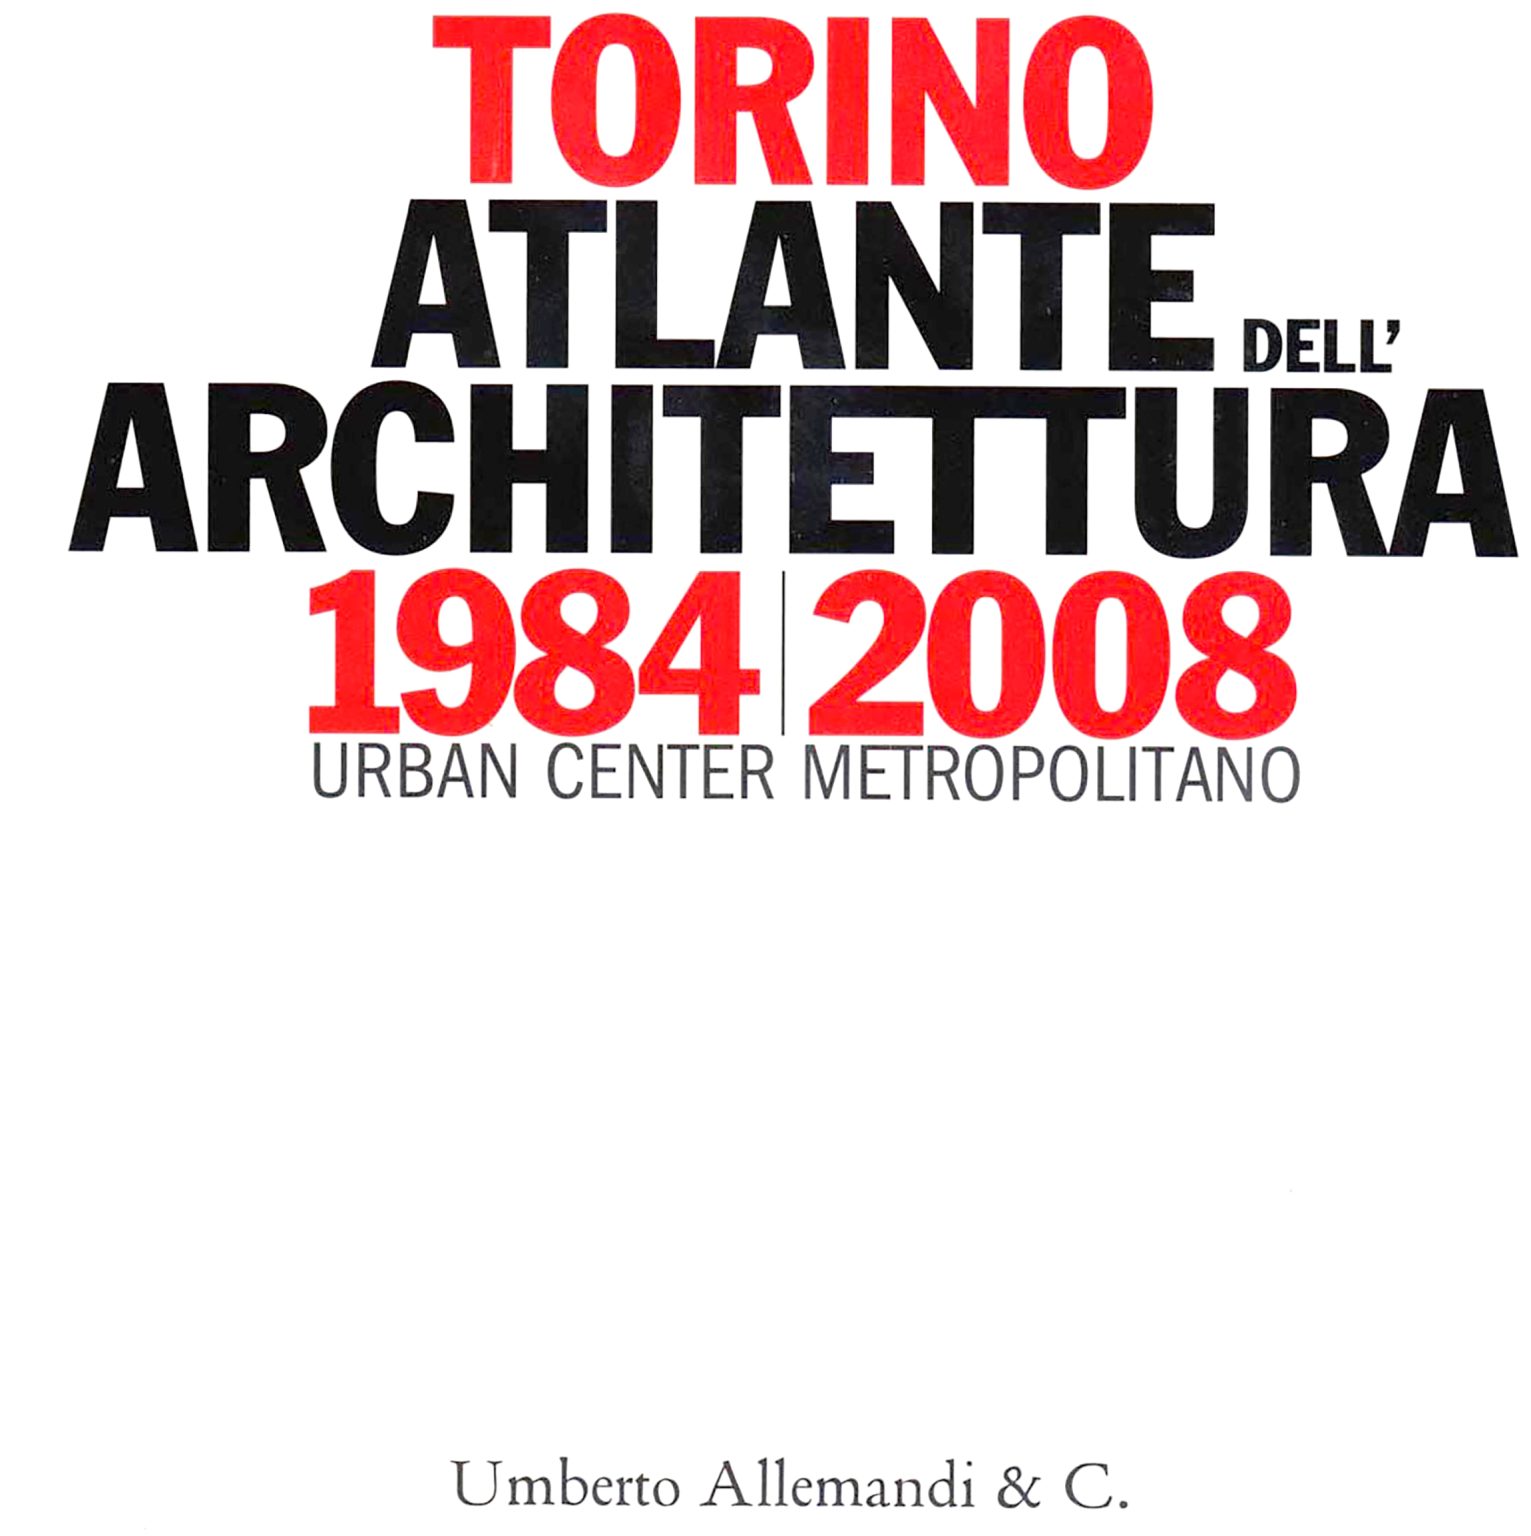 Atlante dell’Architettura Torino 1984-2008